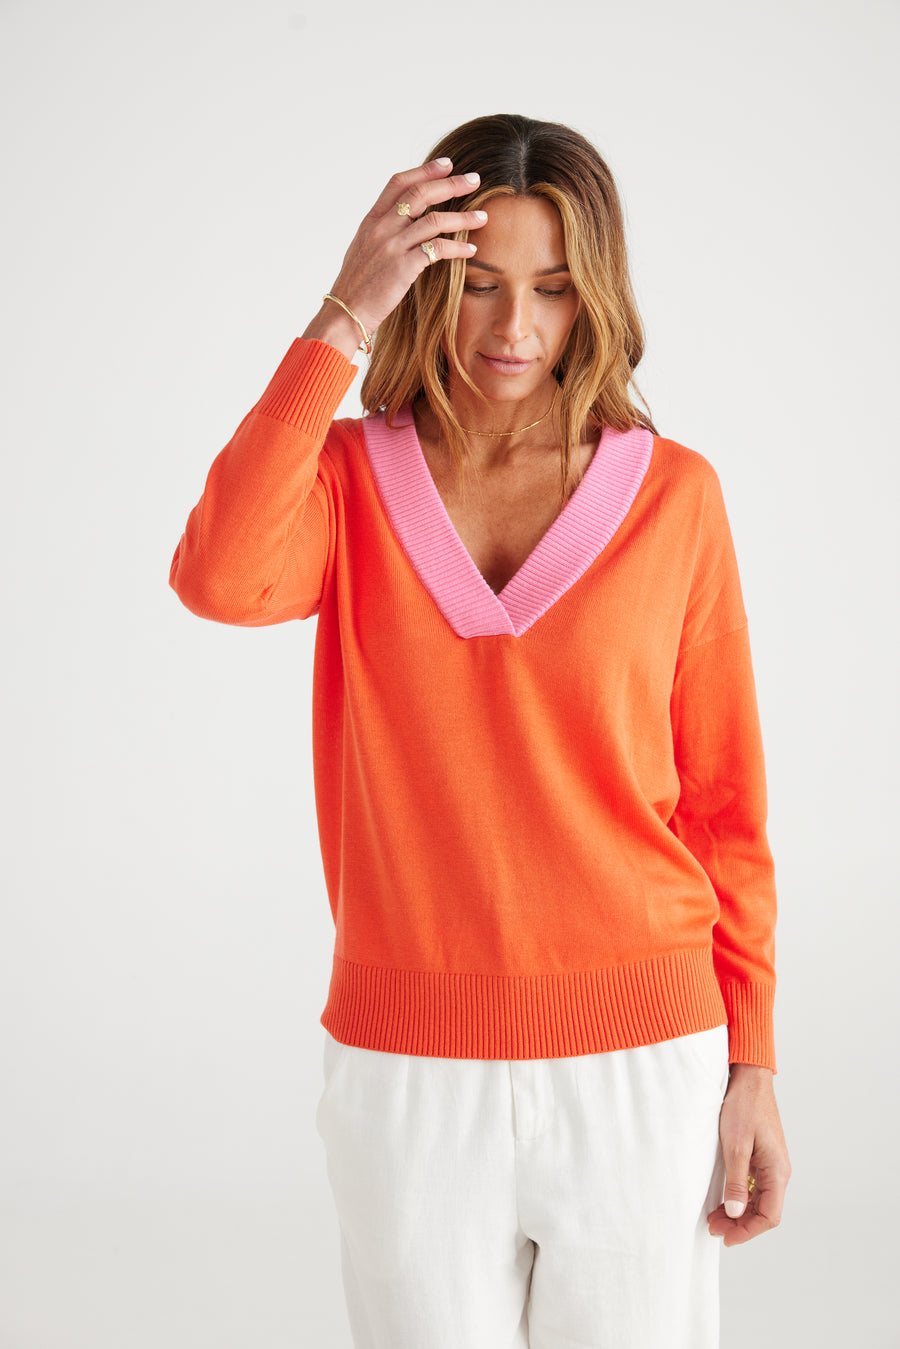 Barcelona Knit - Orange + Pink